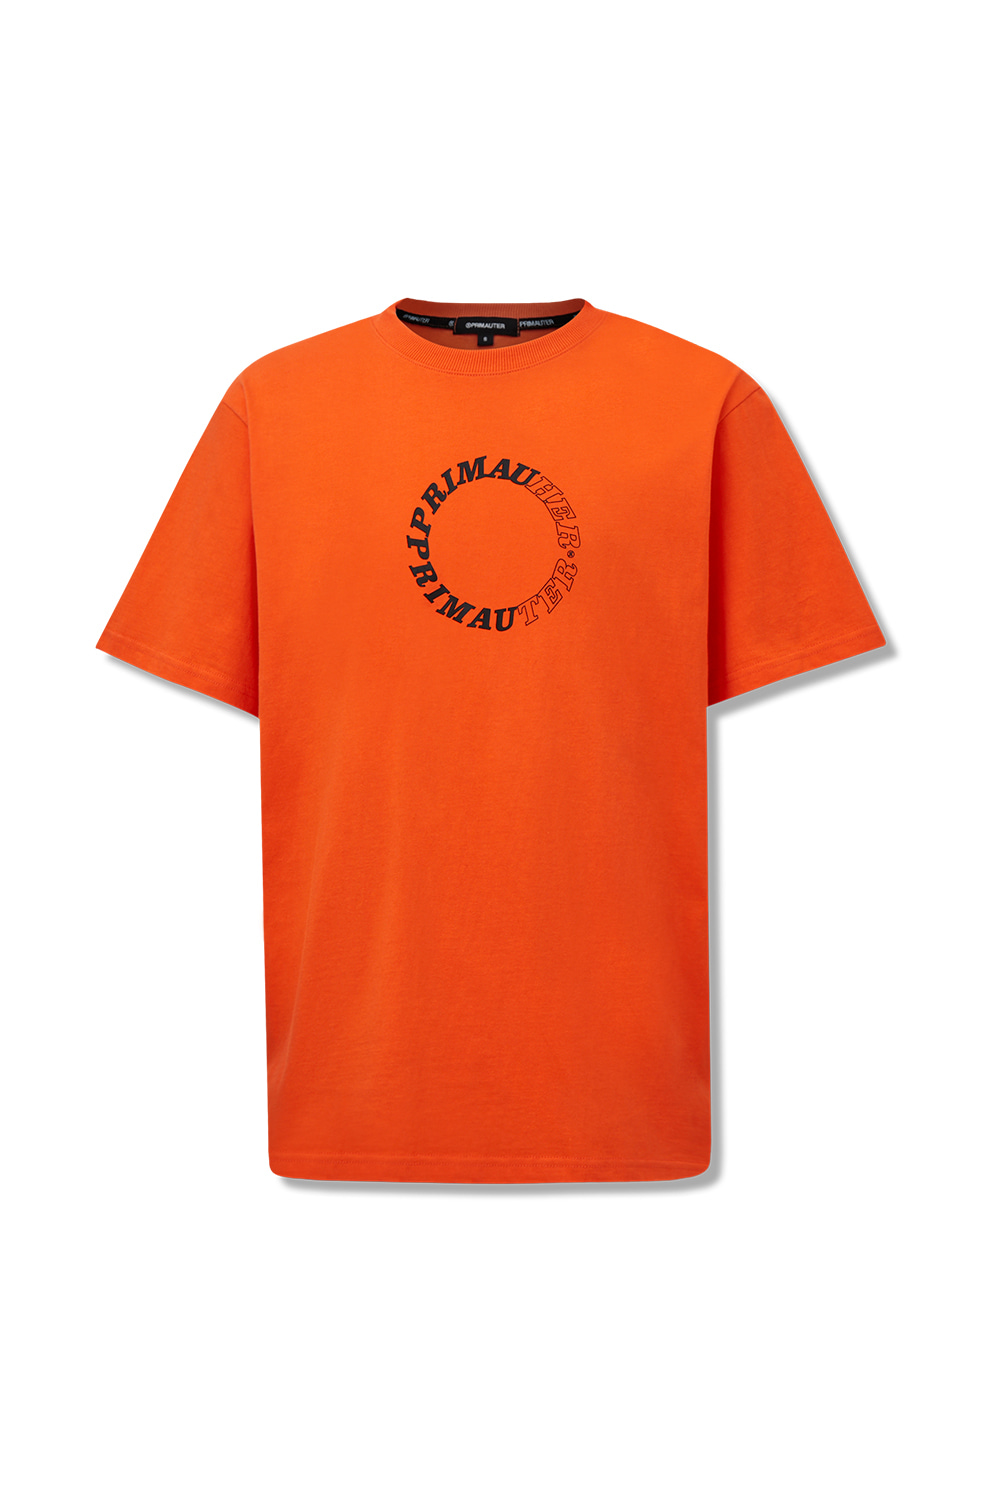 마이크로허터 하프셔츠 (Orange)